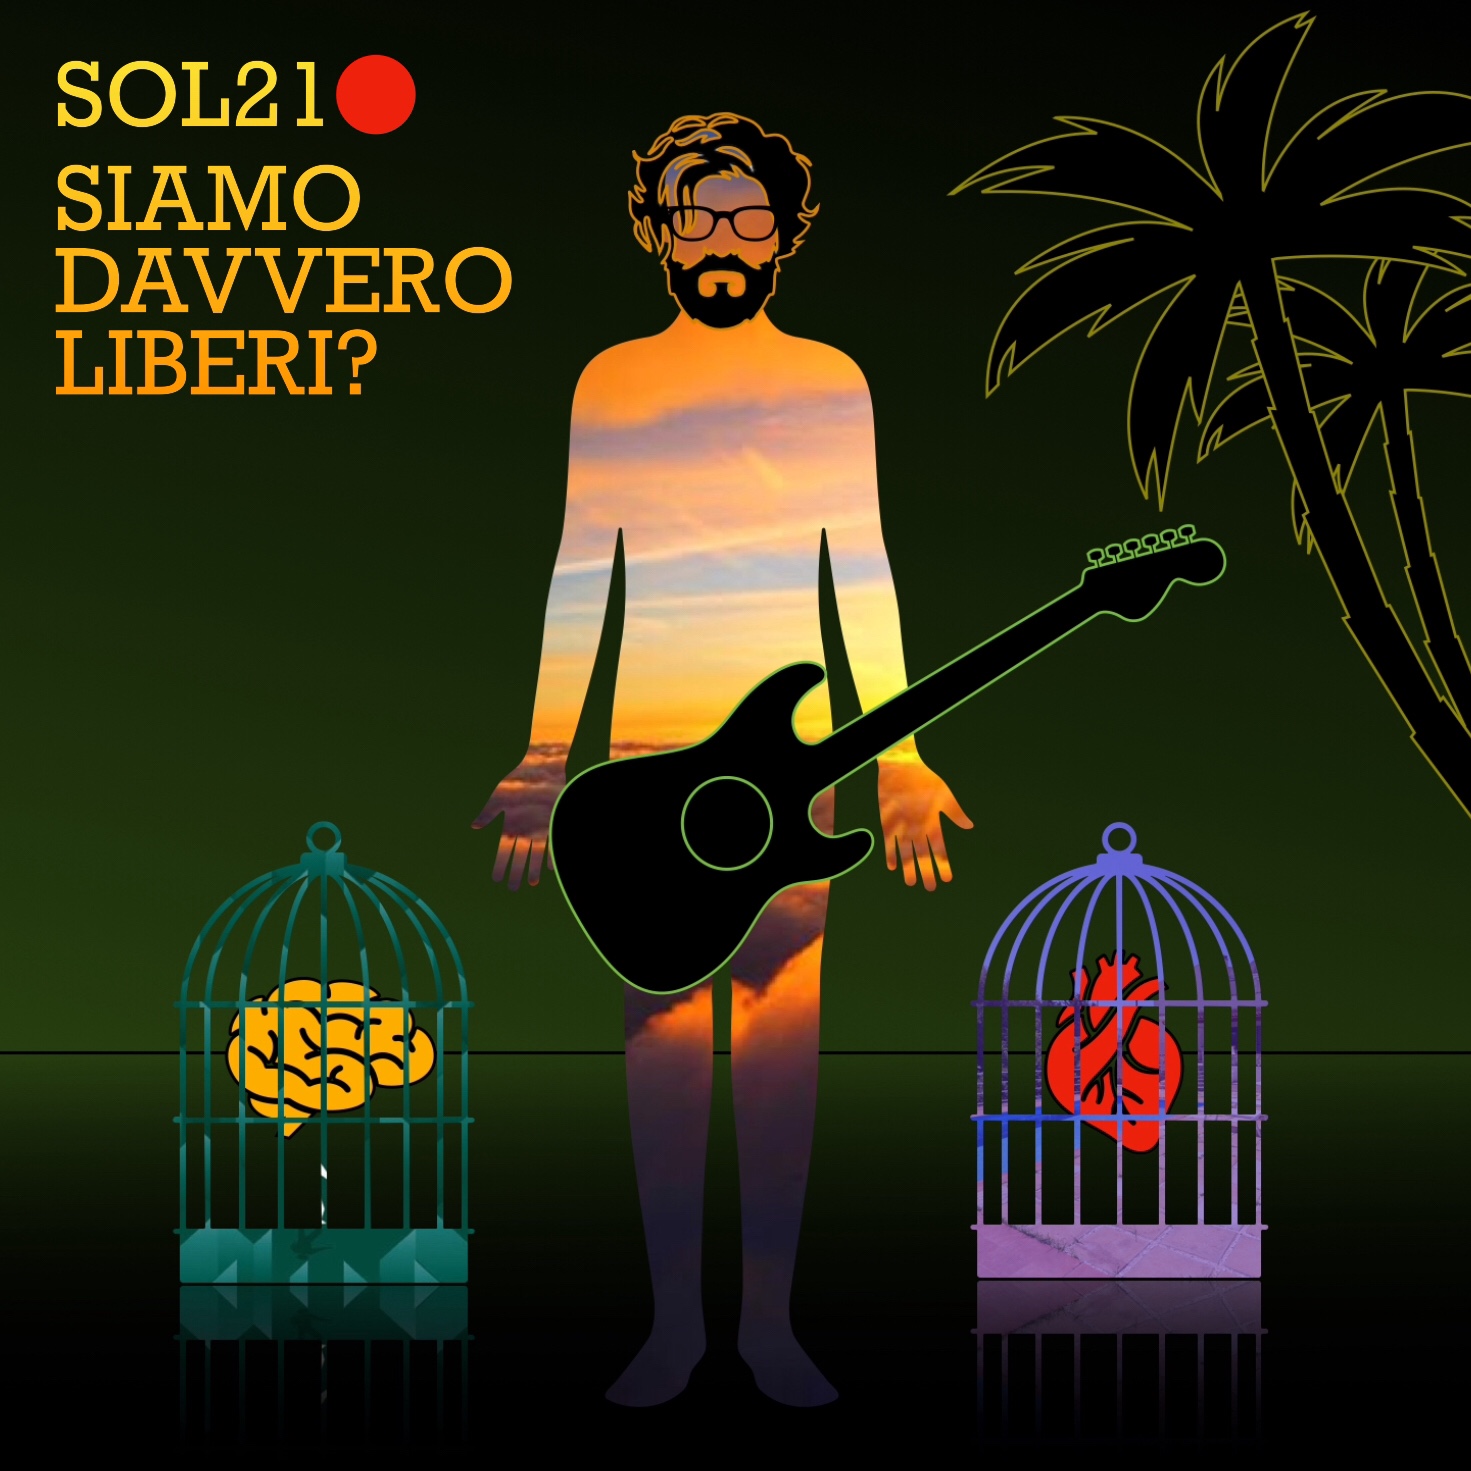 SOL21 Presenta A MARE Tratto dall’album SIAMO DAVVERO LIBERI?